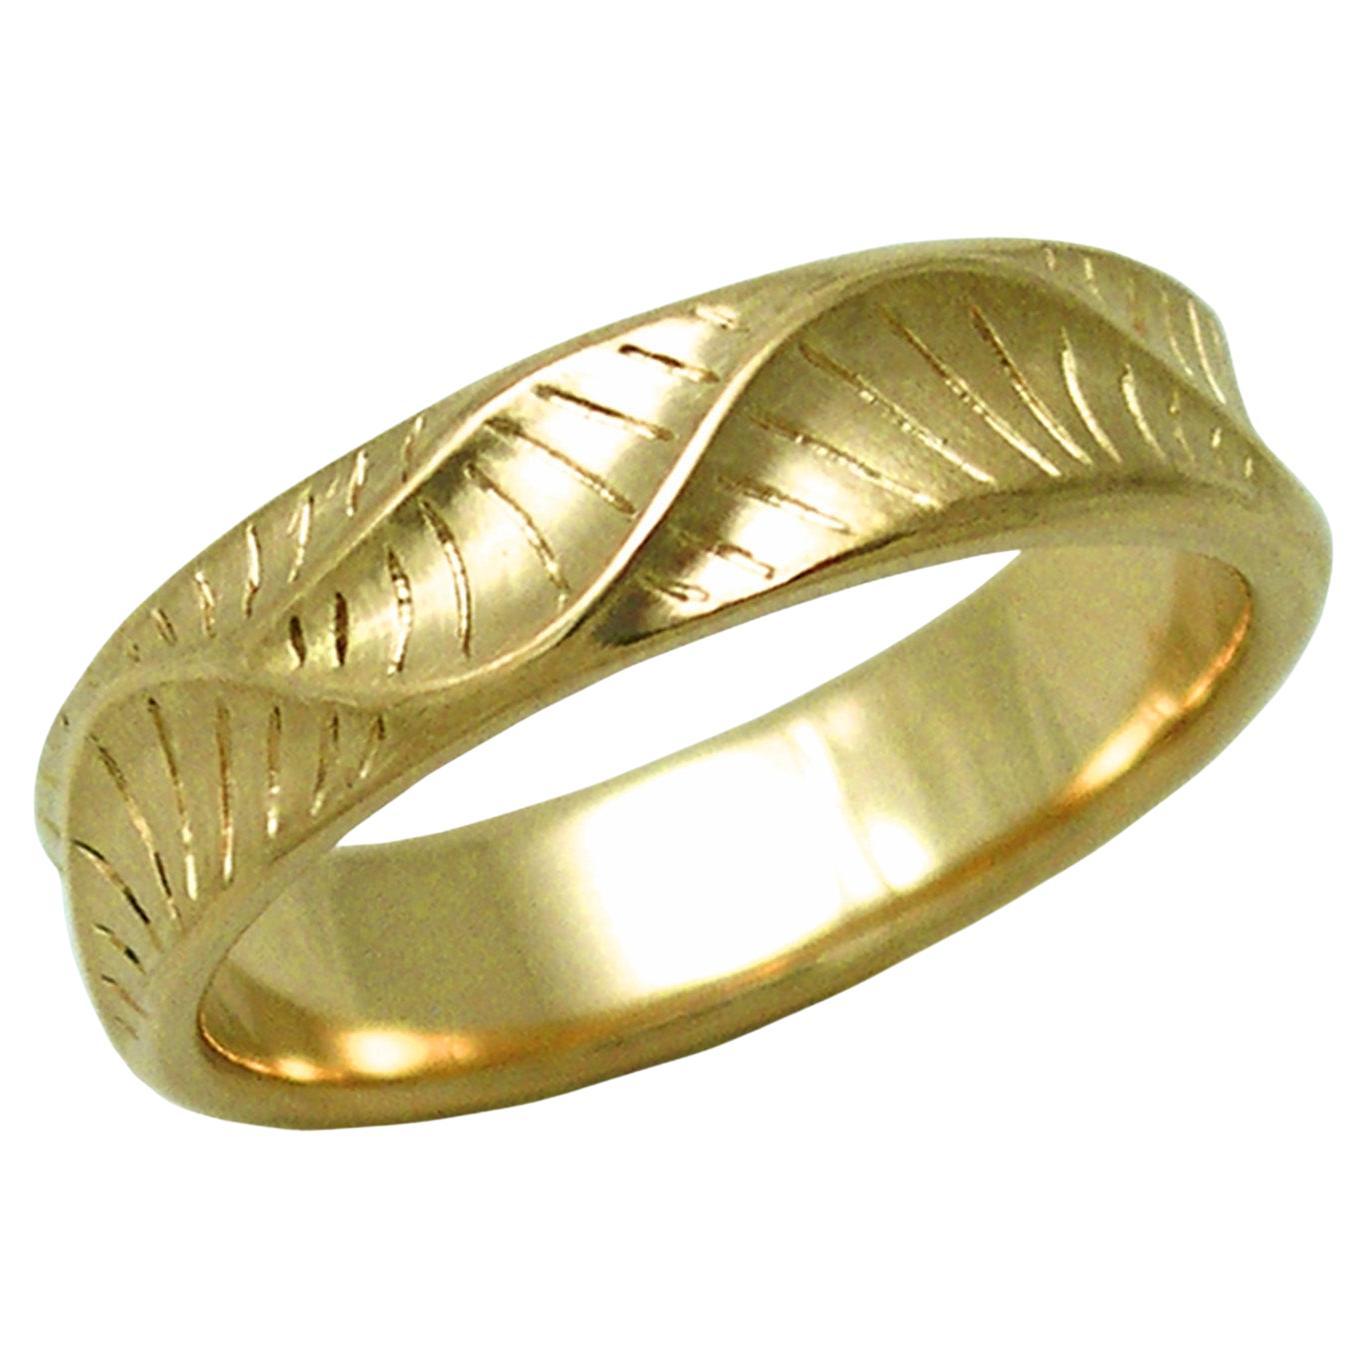 Large 18 Karat Yellow Gold Men's Wave Crest Ring from K.Mita